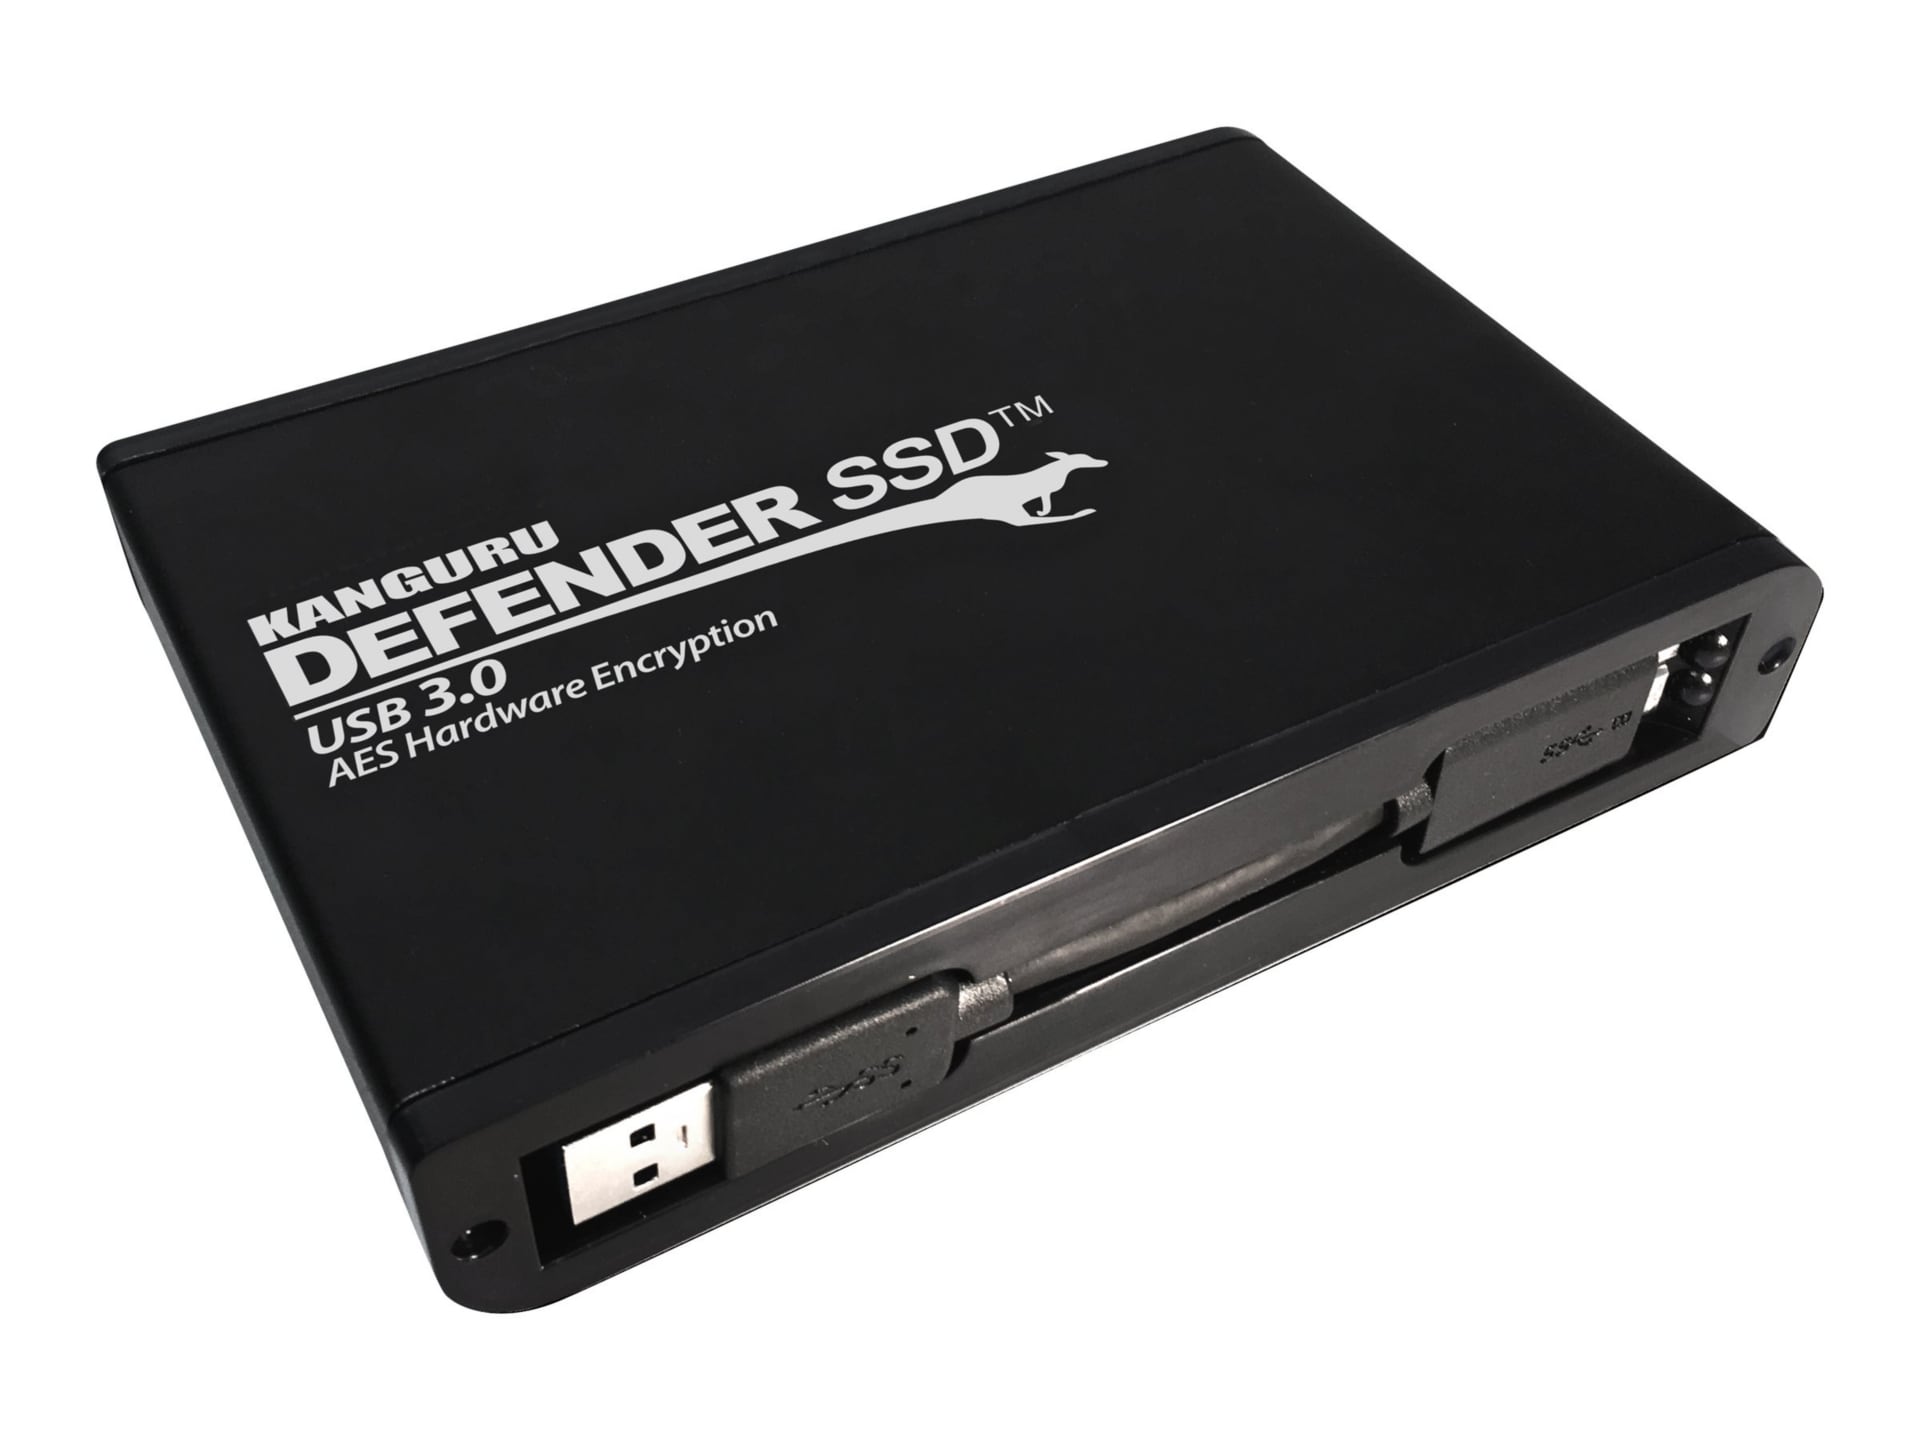 Kanguru Defender SSD 35 - SSD - 8 TB - USB 3.0 - TAA Compliant